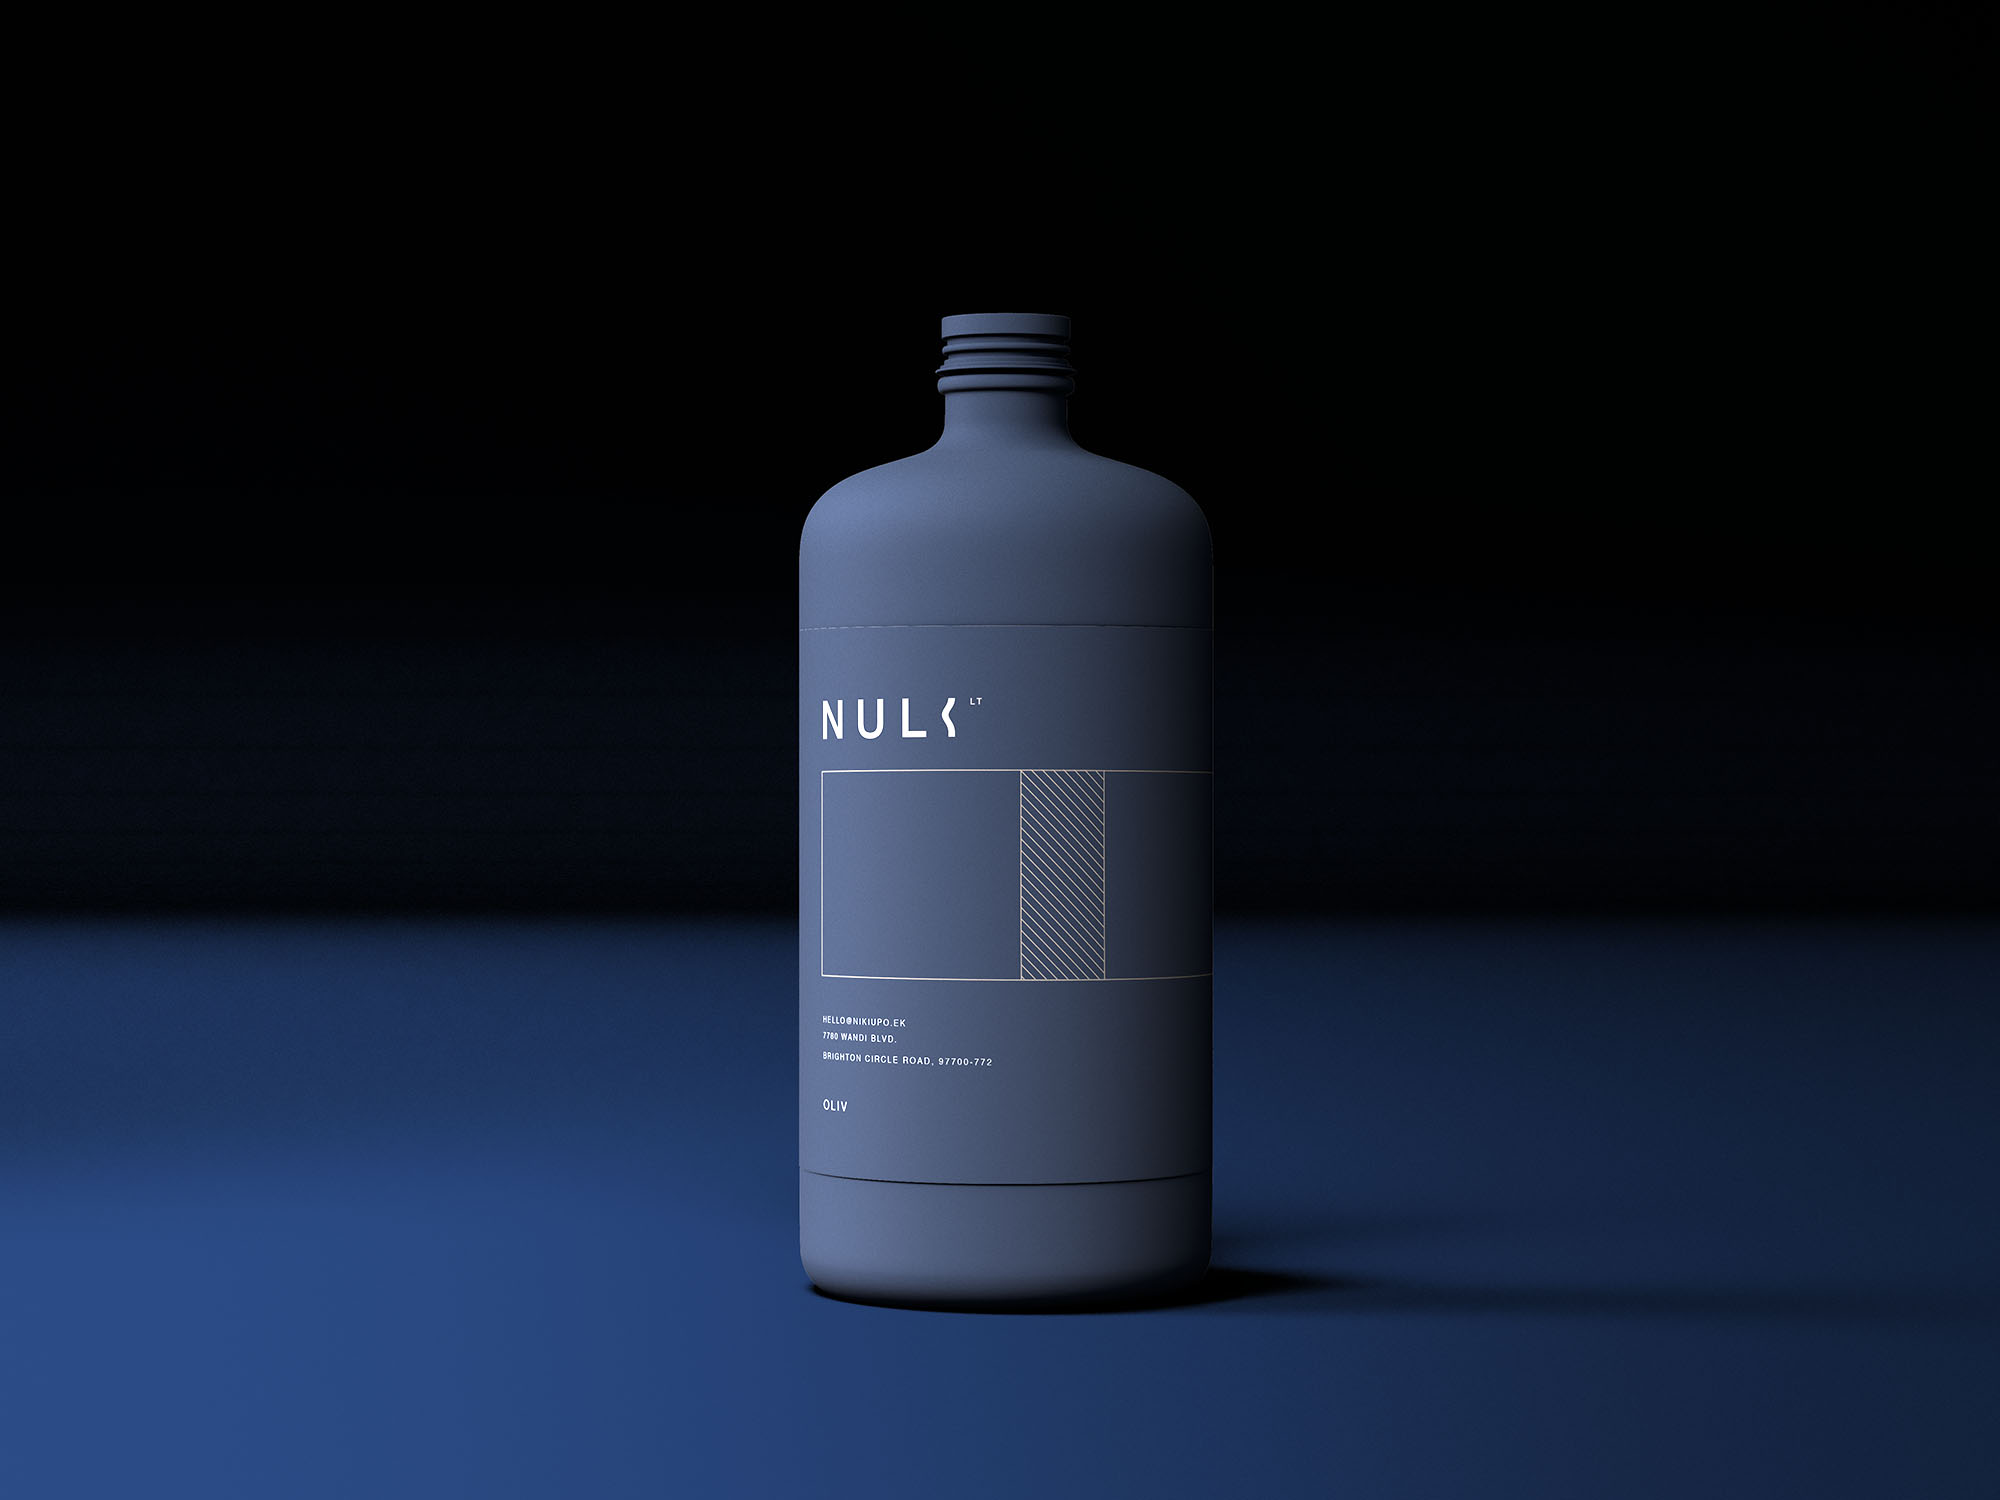 哑光大瓶子包装设计展示样机 Matte Bottle Mockup 样机素材 第1张